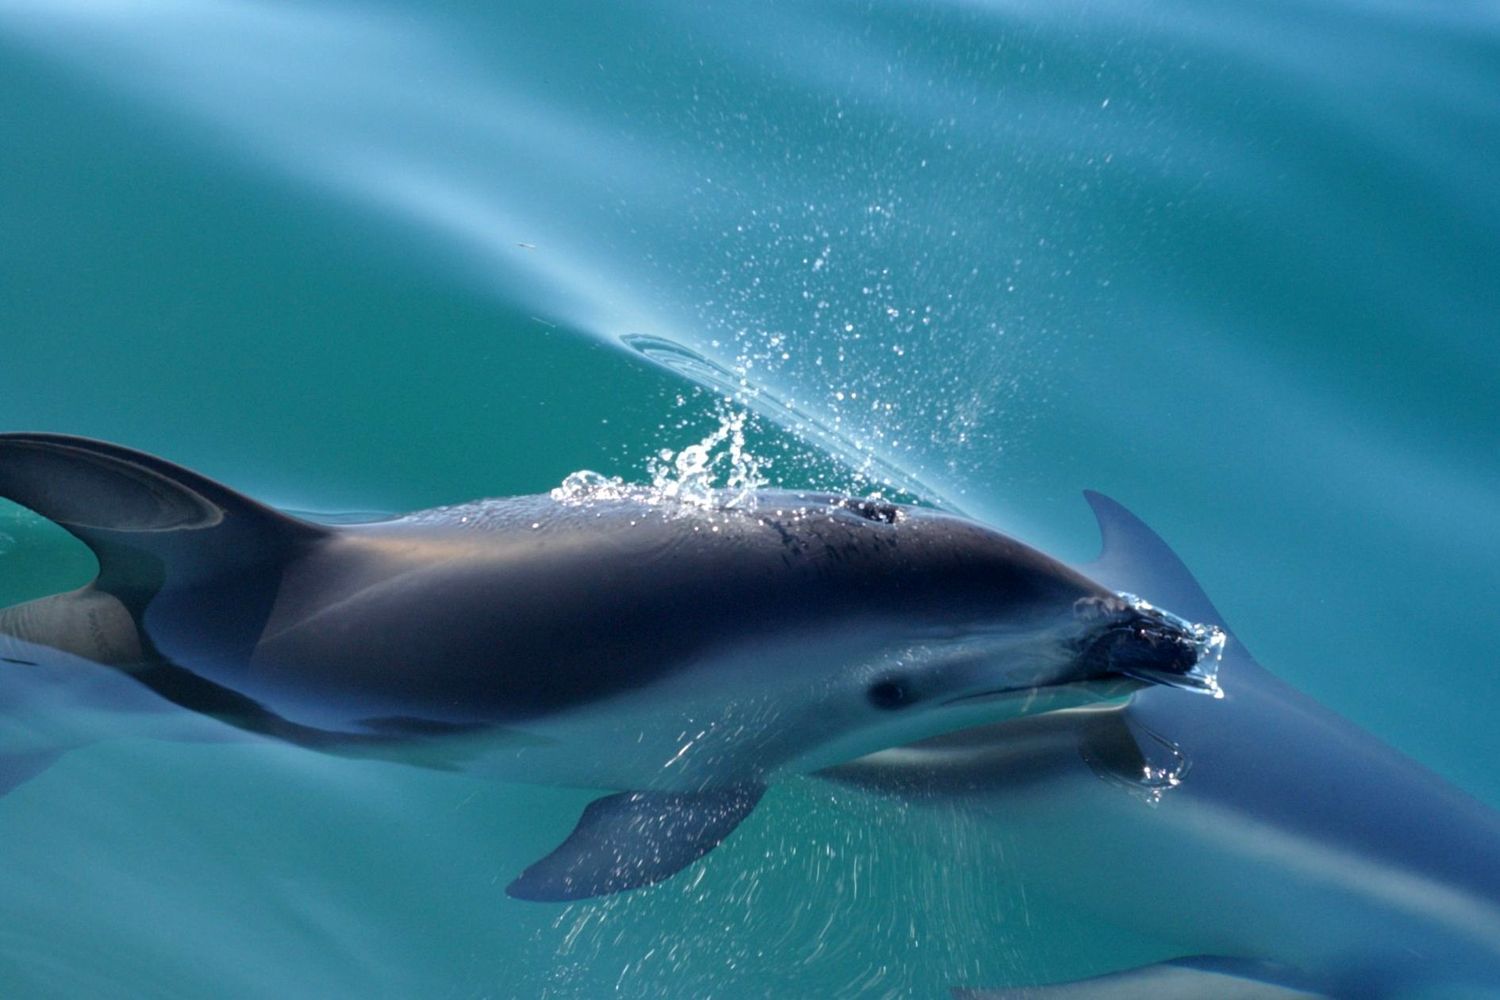 Σκόπελος: Ξαφνική επίσκεψη δελφινιού σε παραλία (βίντεο)